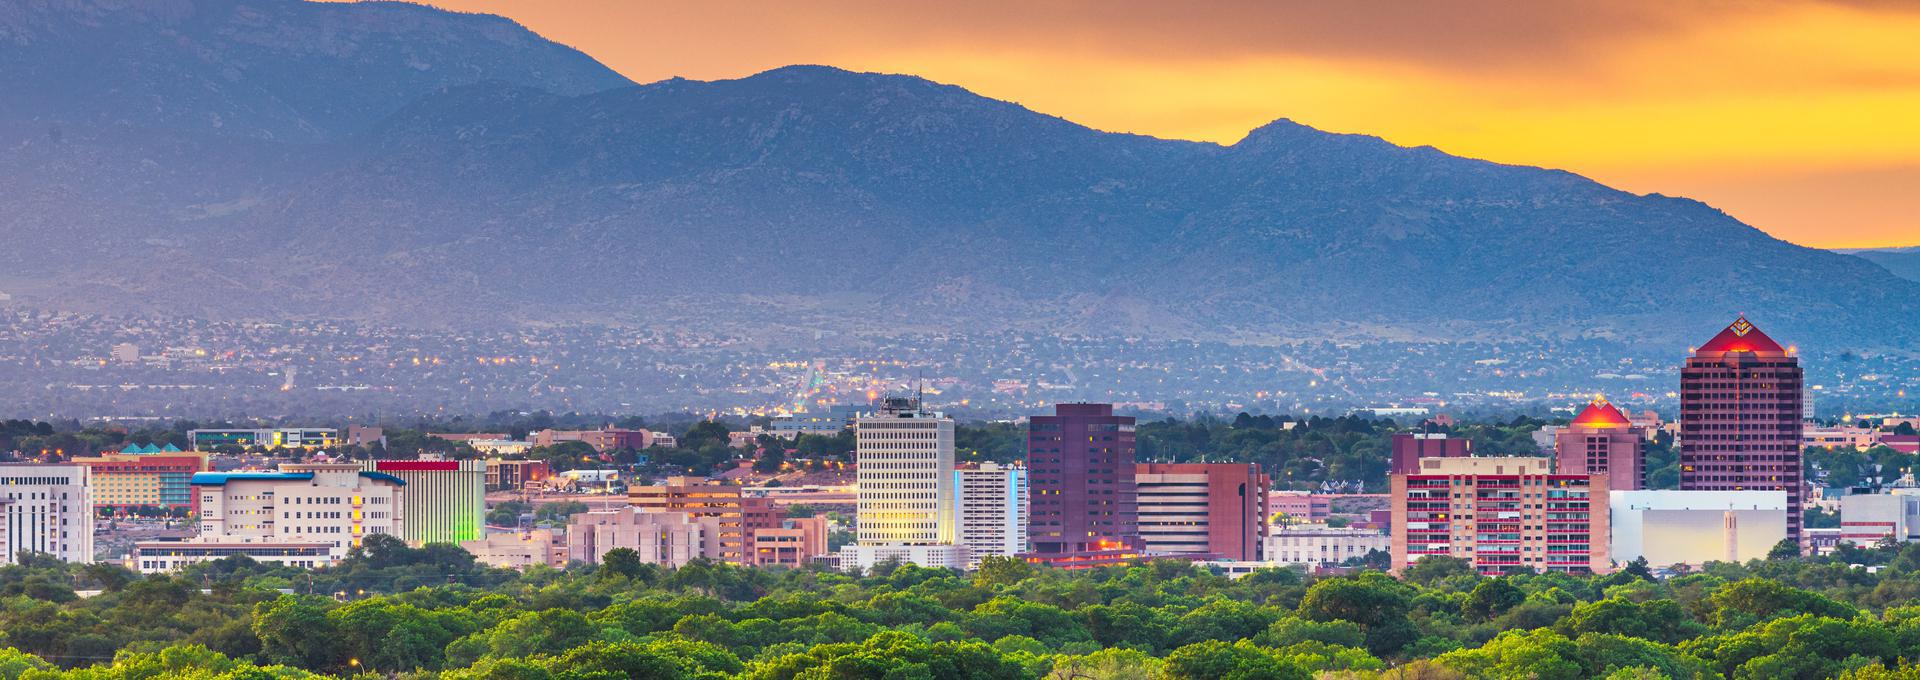 Albuquerque - 